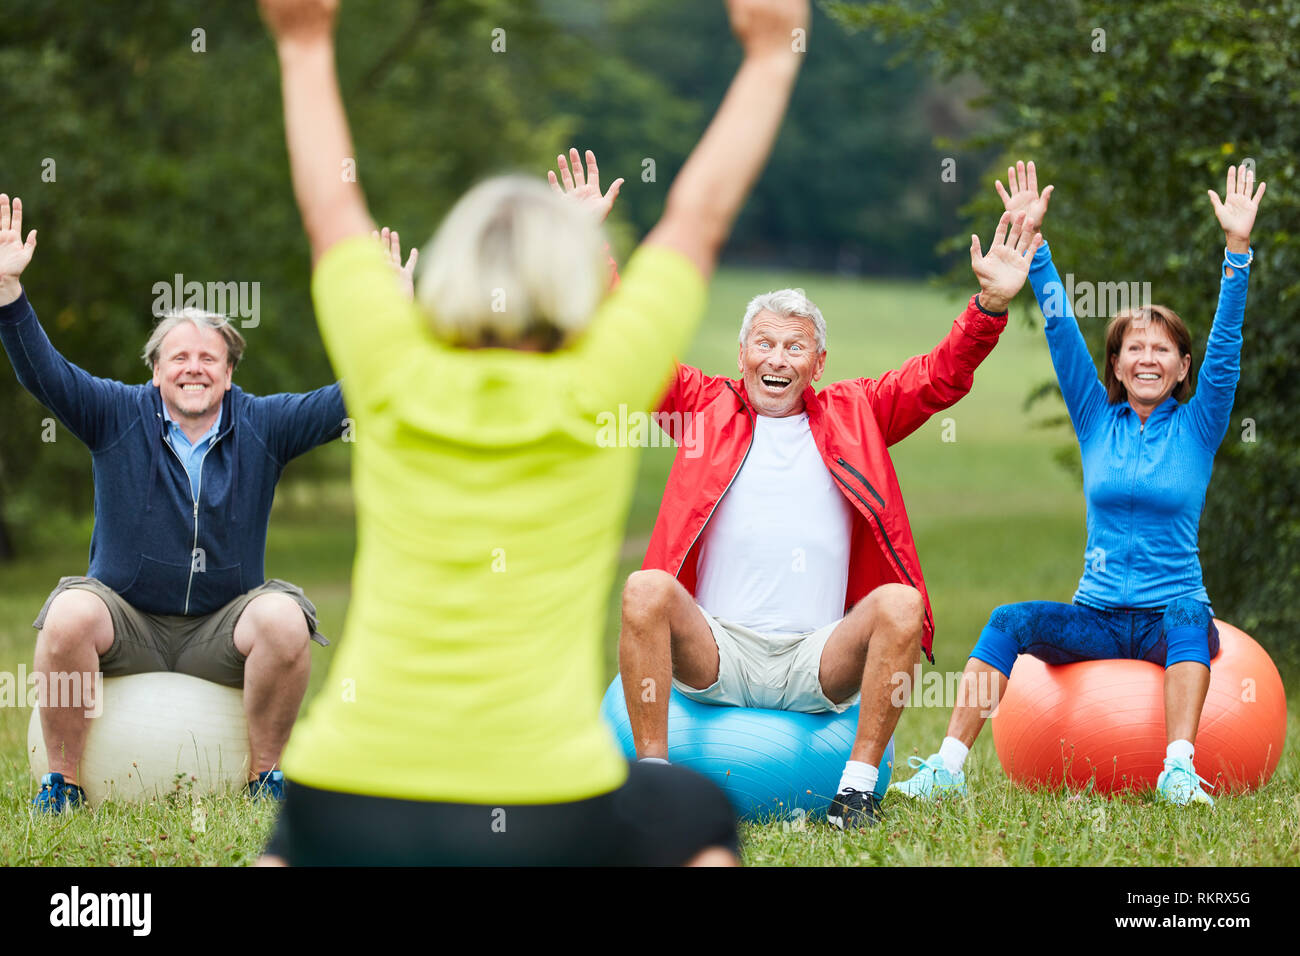 Aktive Senioren zurück Ausbildung zusammen im Park auf gymnastikbälle Stockfoto